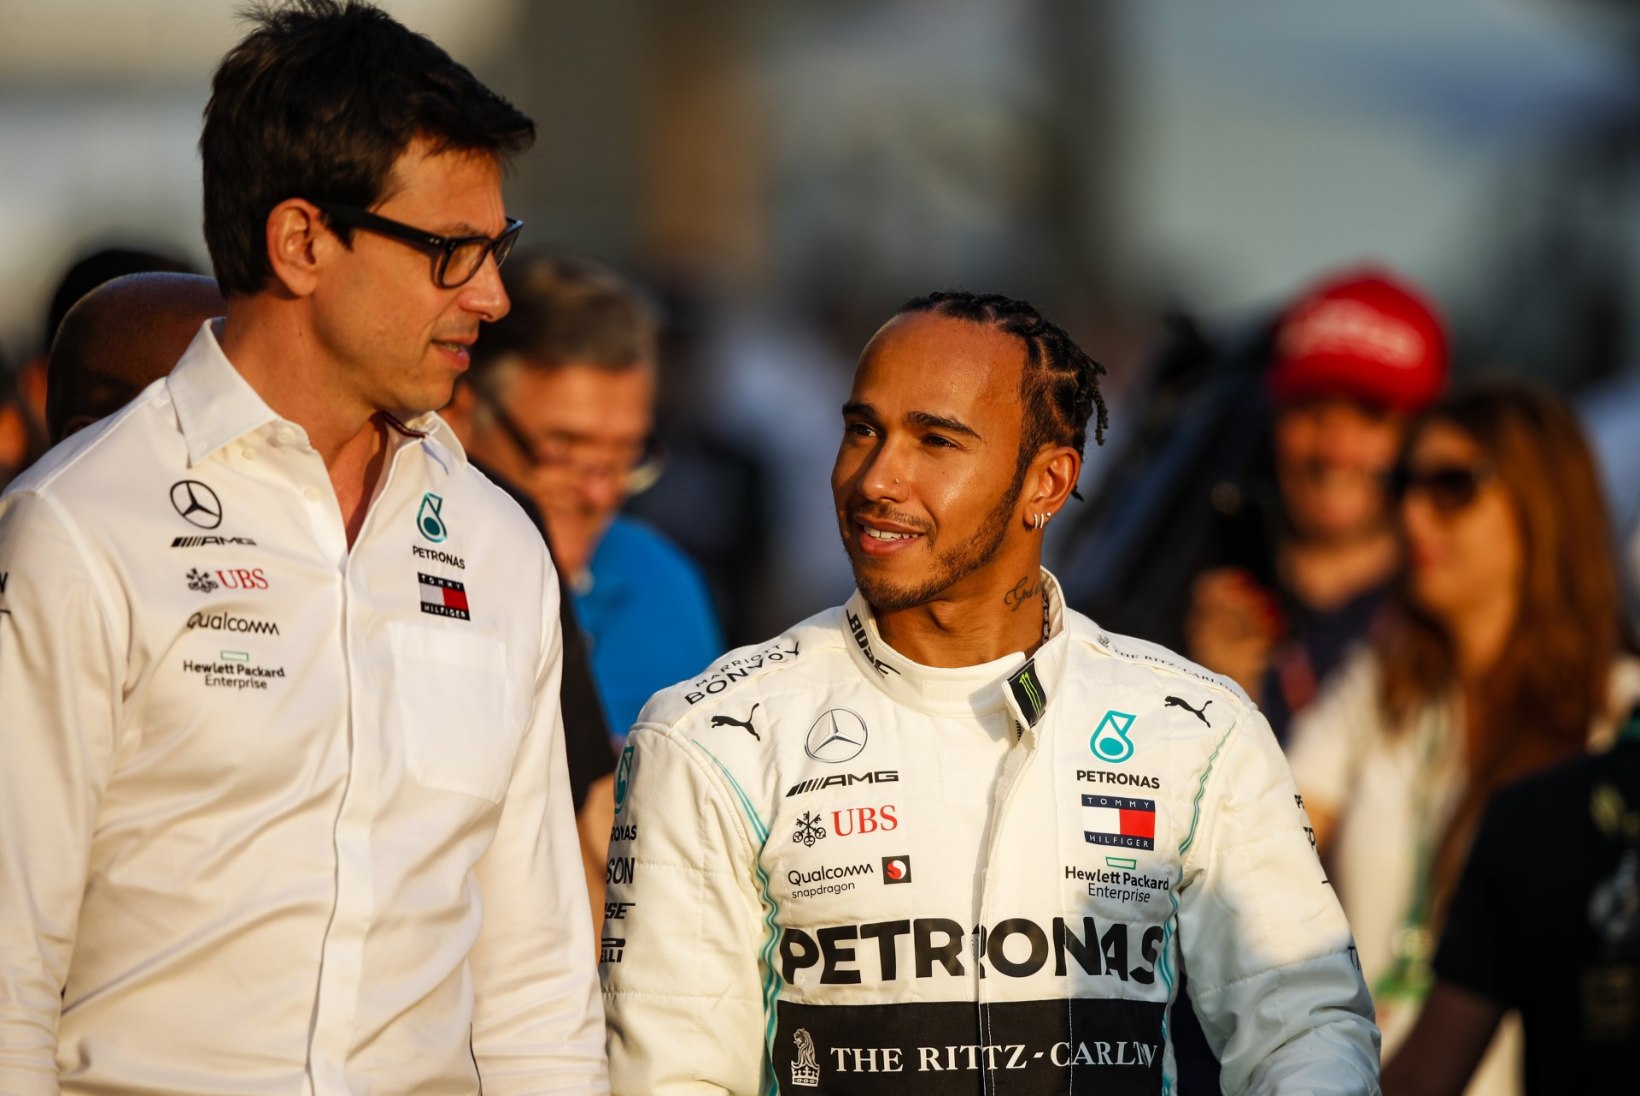 Saksa meedia: Mercedese meeskond kaalub F1 sarjast lahkumist